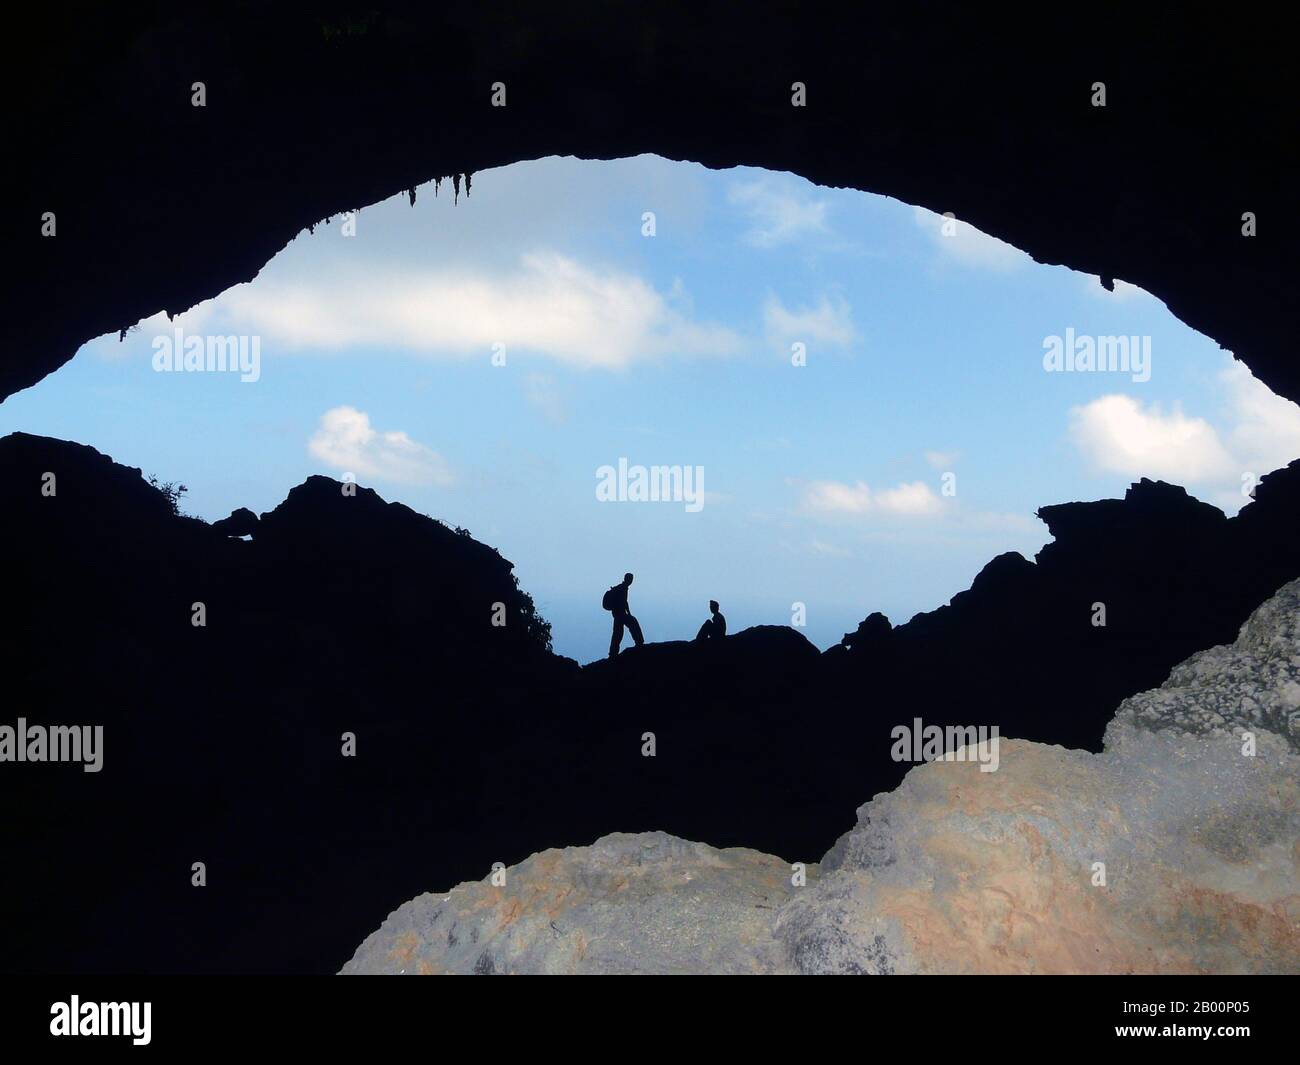 Yemen: Isla Socotra (Isla Suqutra), cueva de halcón en Hala, al este de la isla  Socotra. La cueva Hawk en Hala, al este de la isla Socotra, tiene unos 15  metros de